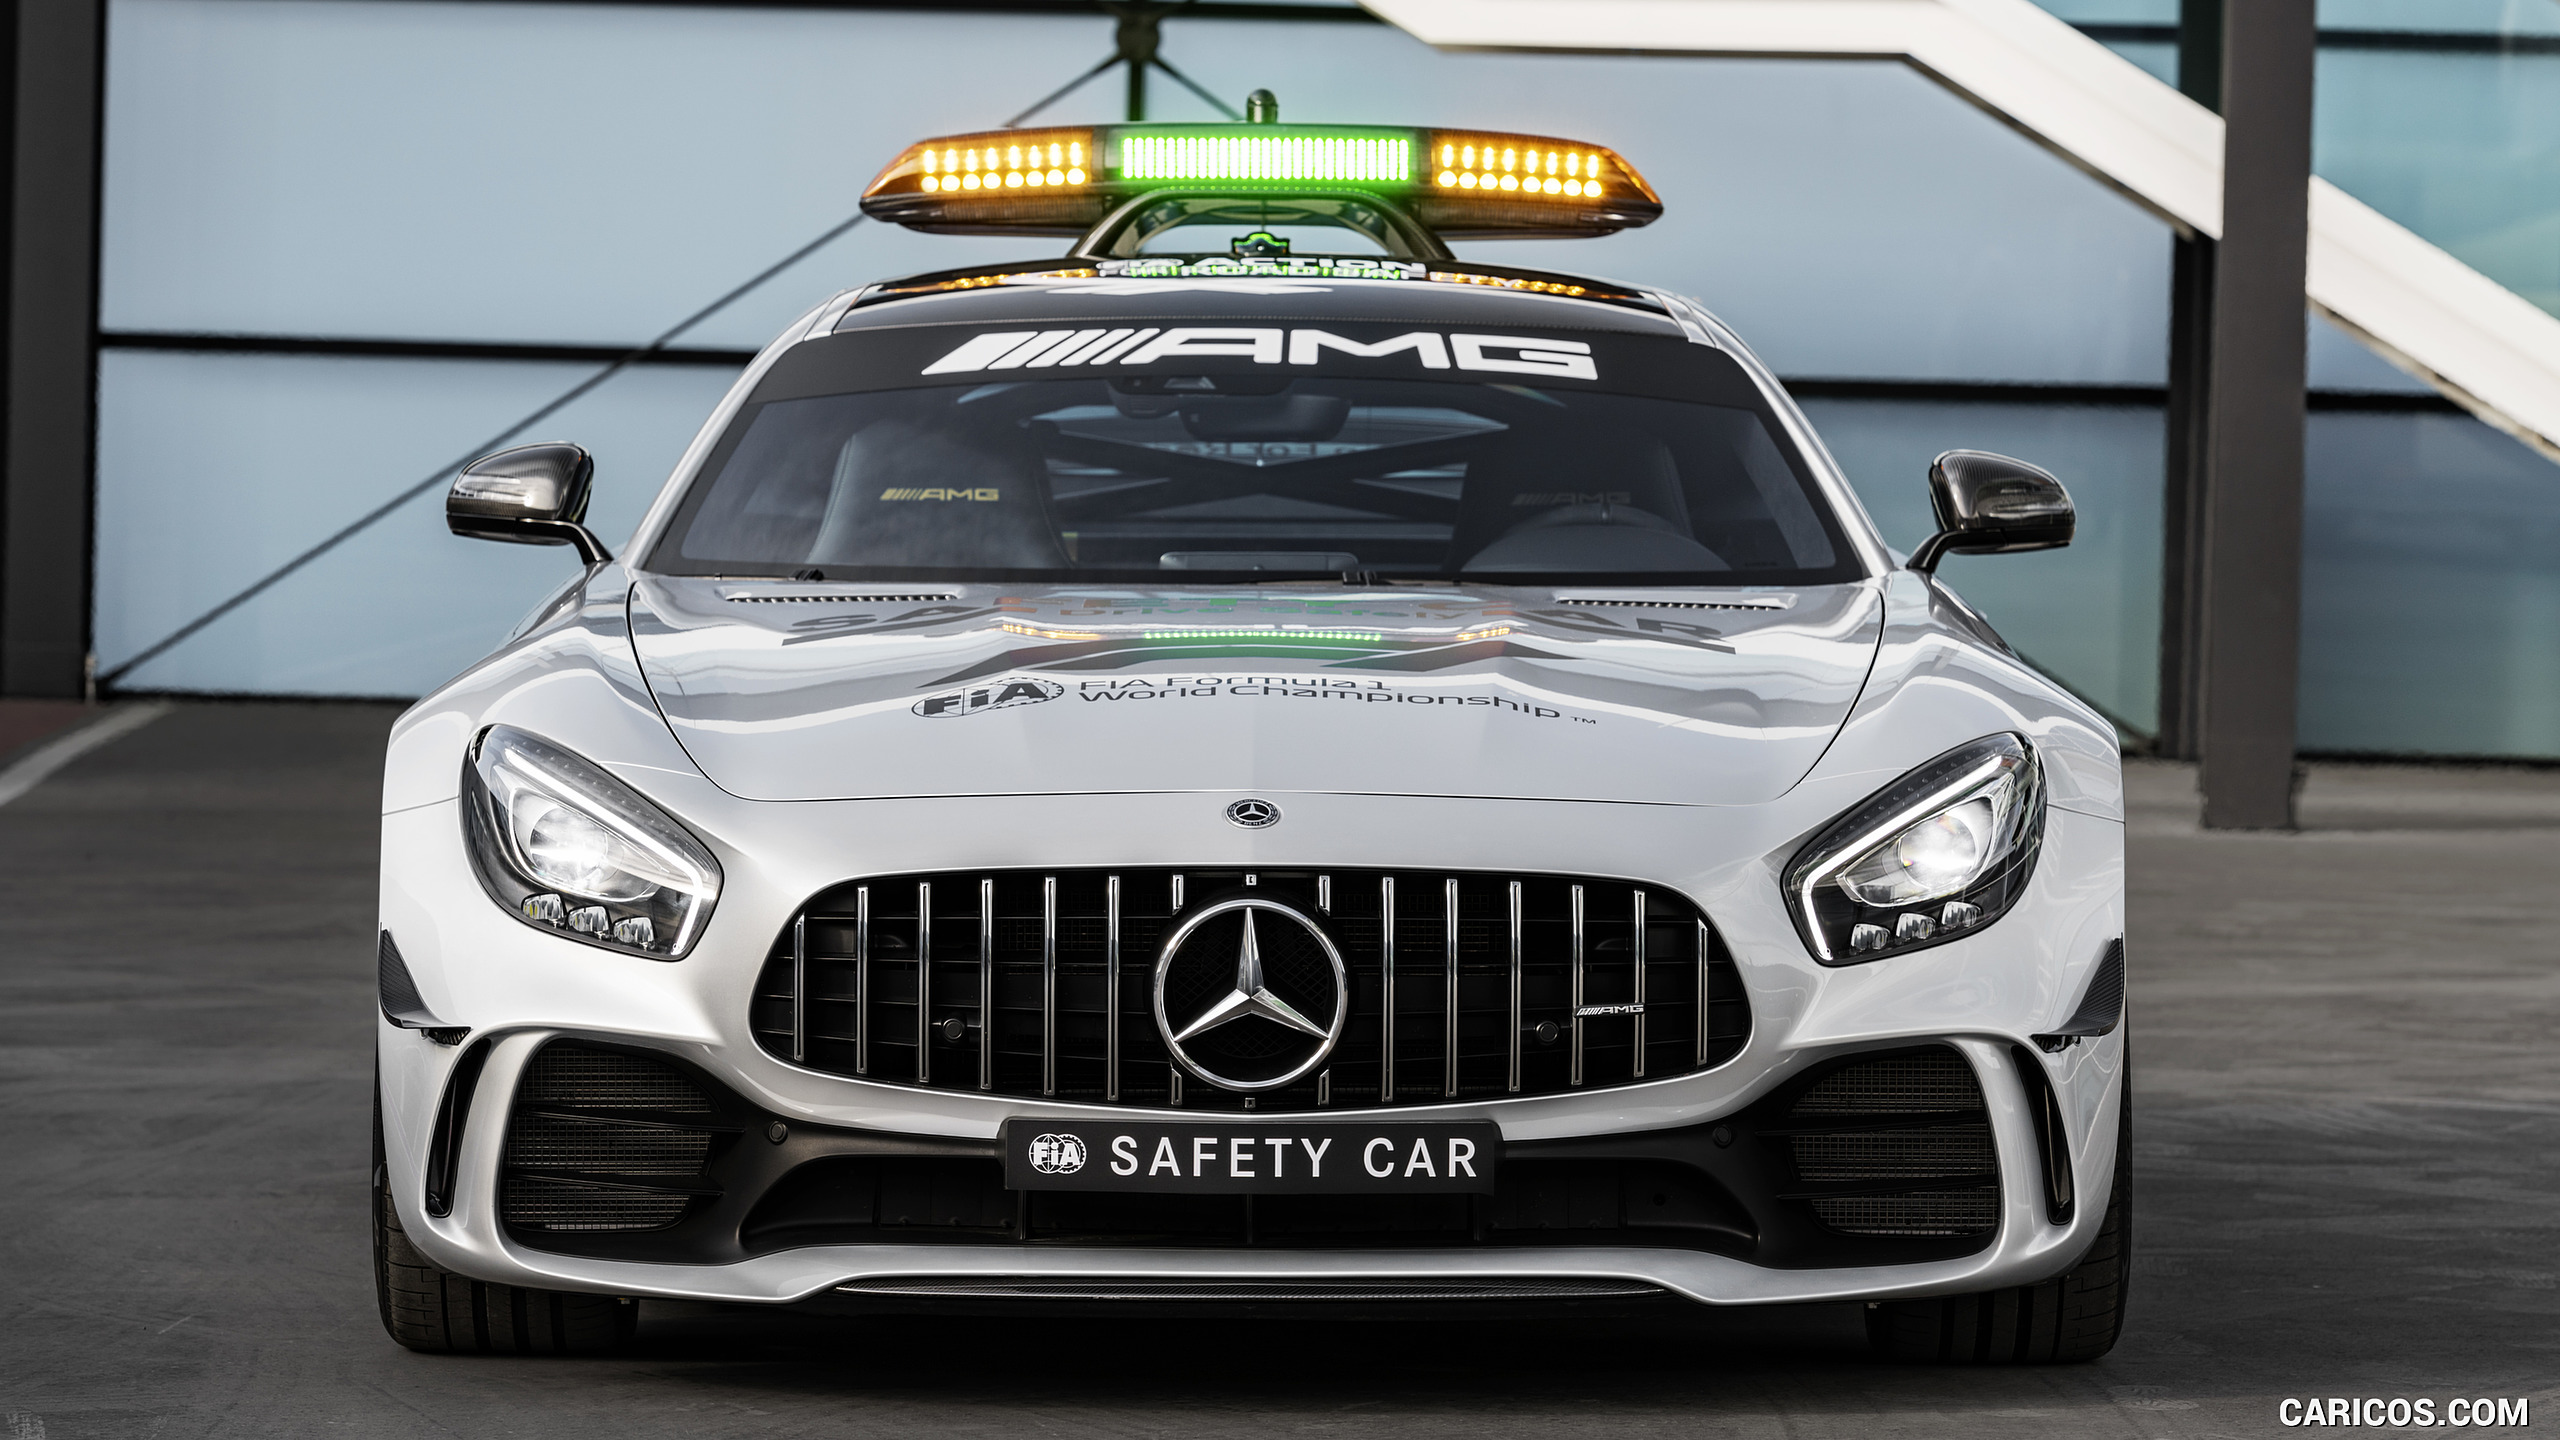 2018 Mercedes-AMG GT R Formula 1 Safety Car , #17 of 34